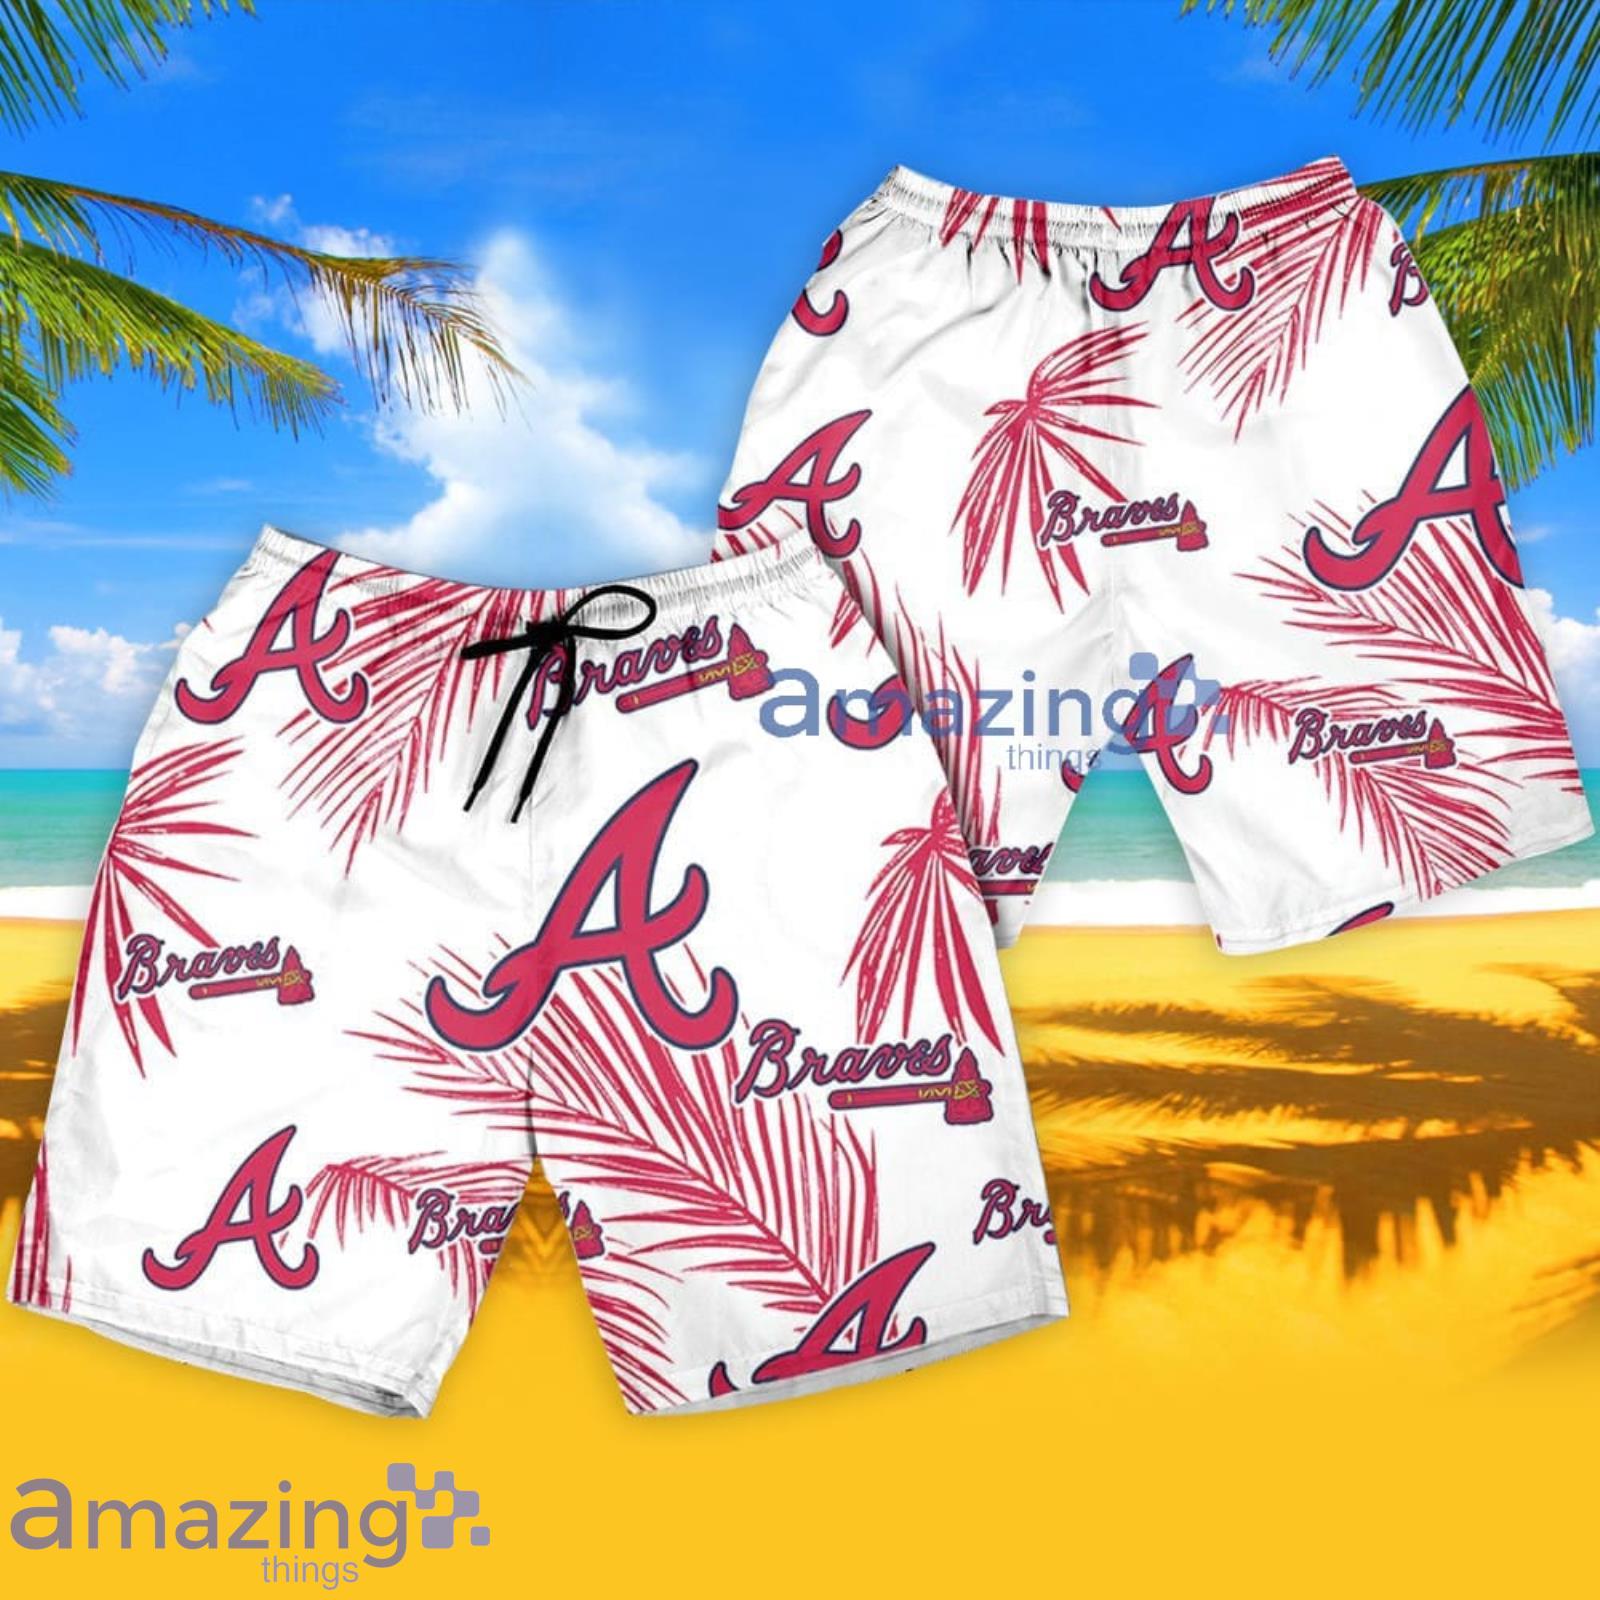 Atlanta Braves Palm Leaves Pattern Tropical Hawaiian Shirt And